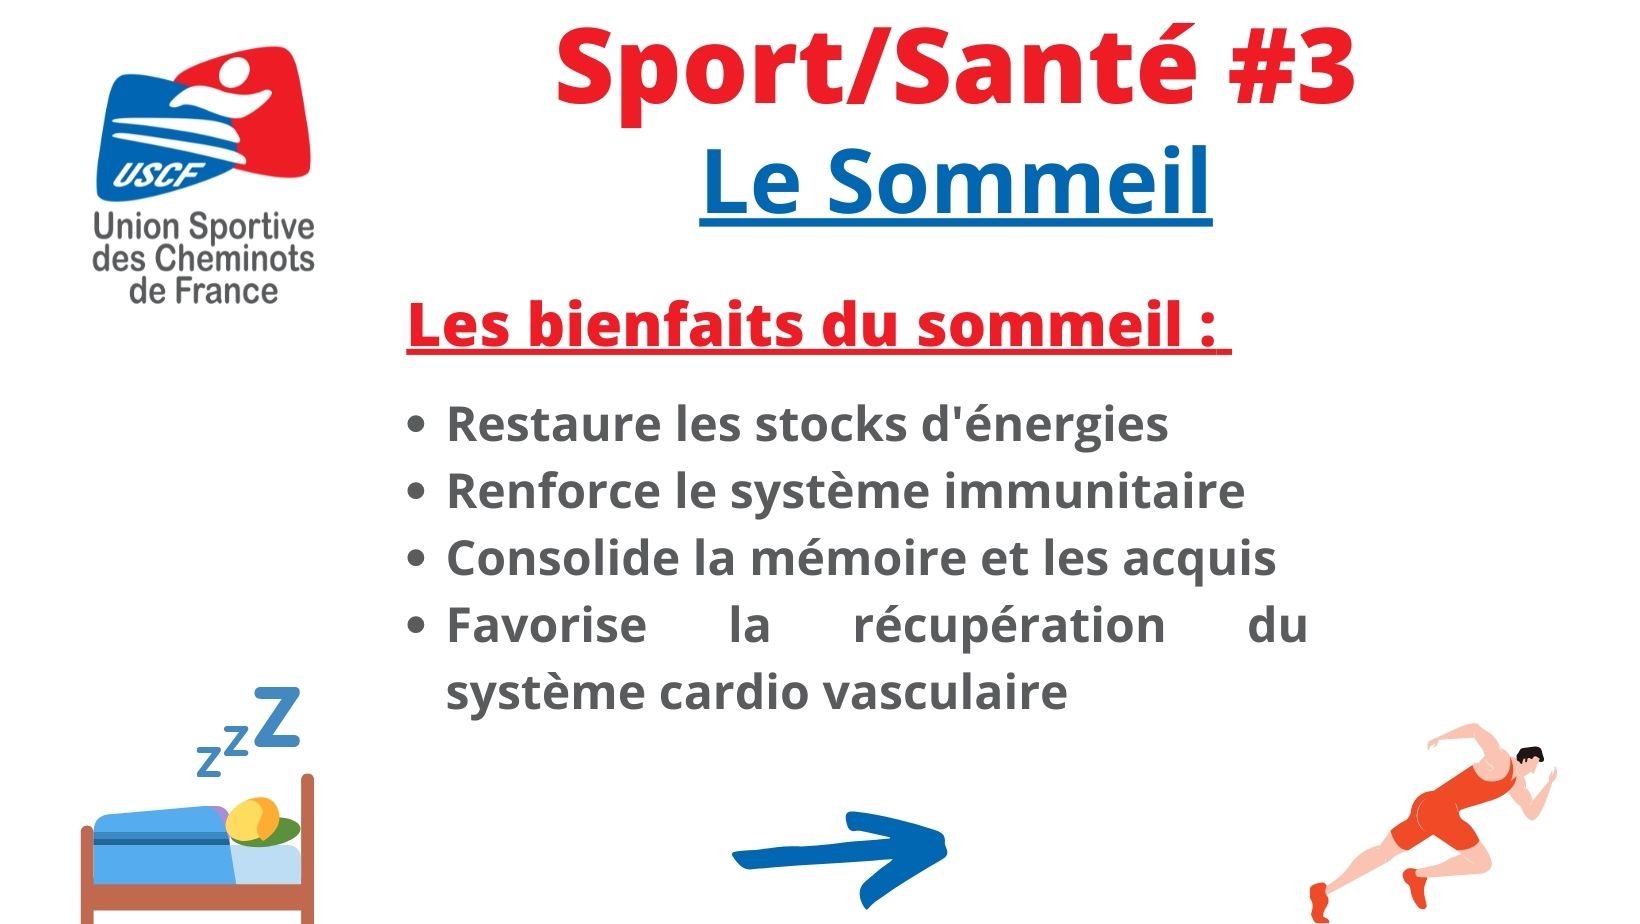 Sport/Santé #3 : Le Sommeil